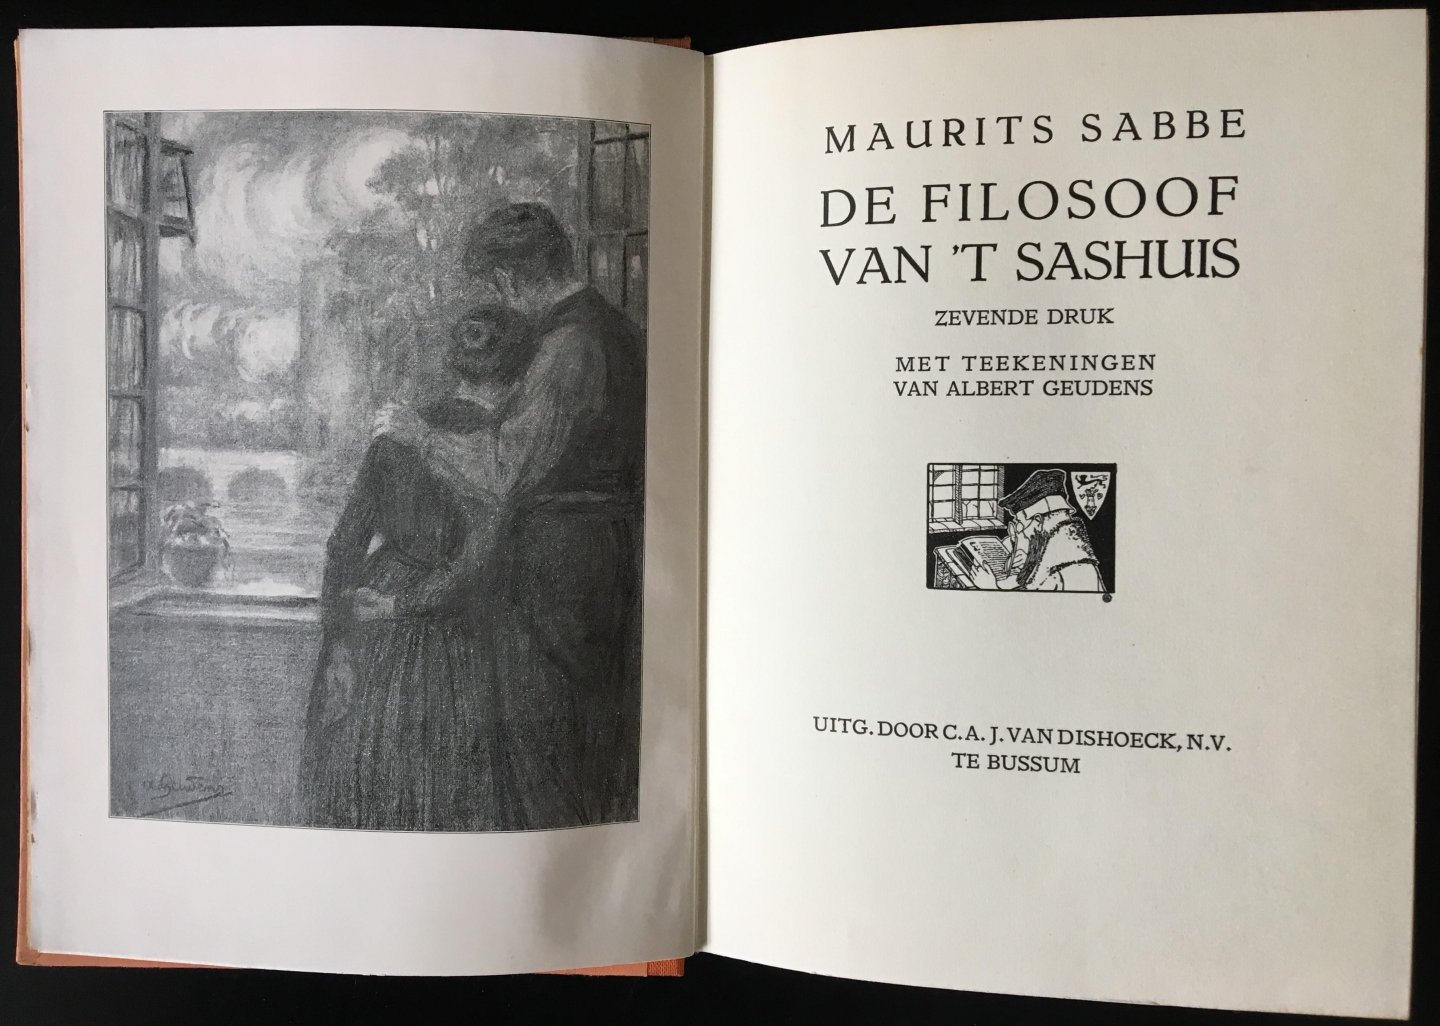 Maurits Sabbe - De filosoof van T'Sashuis